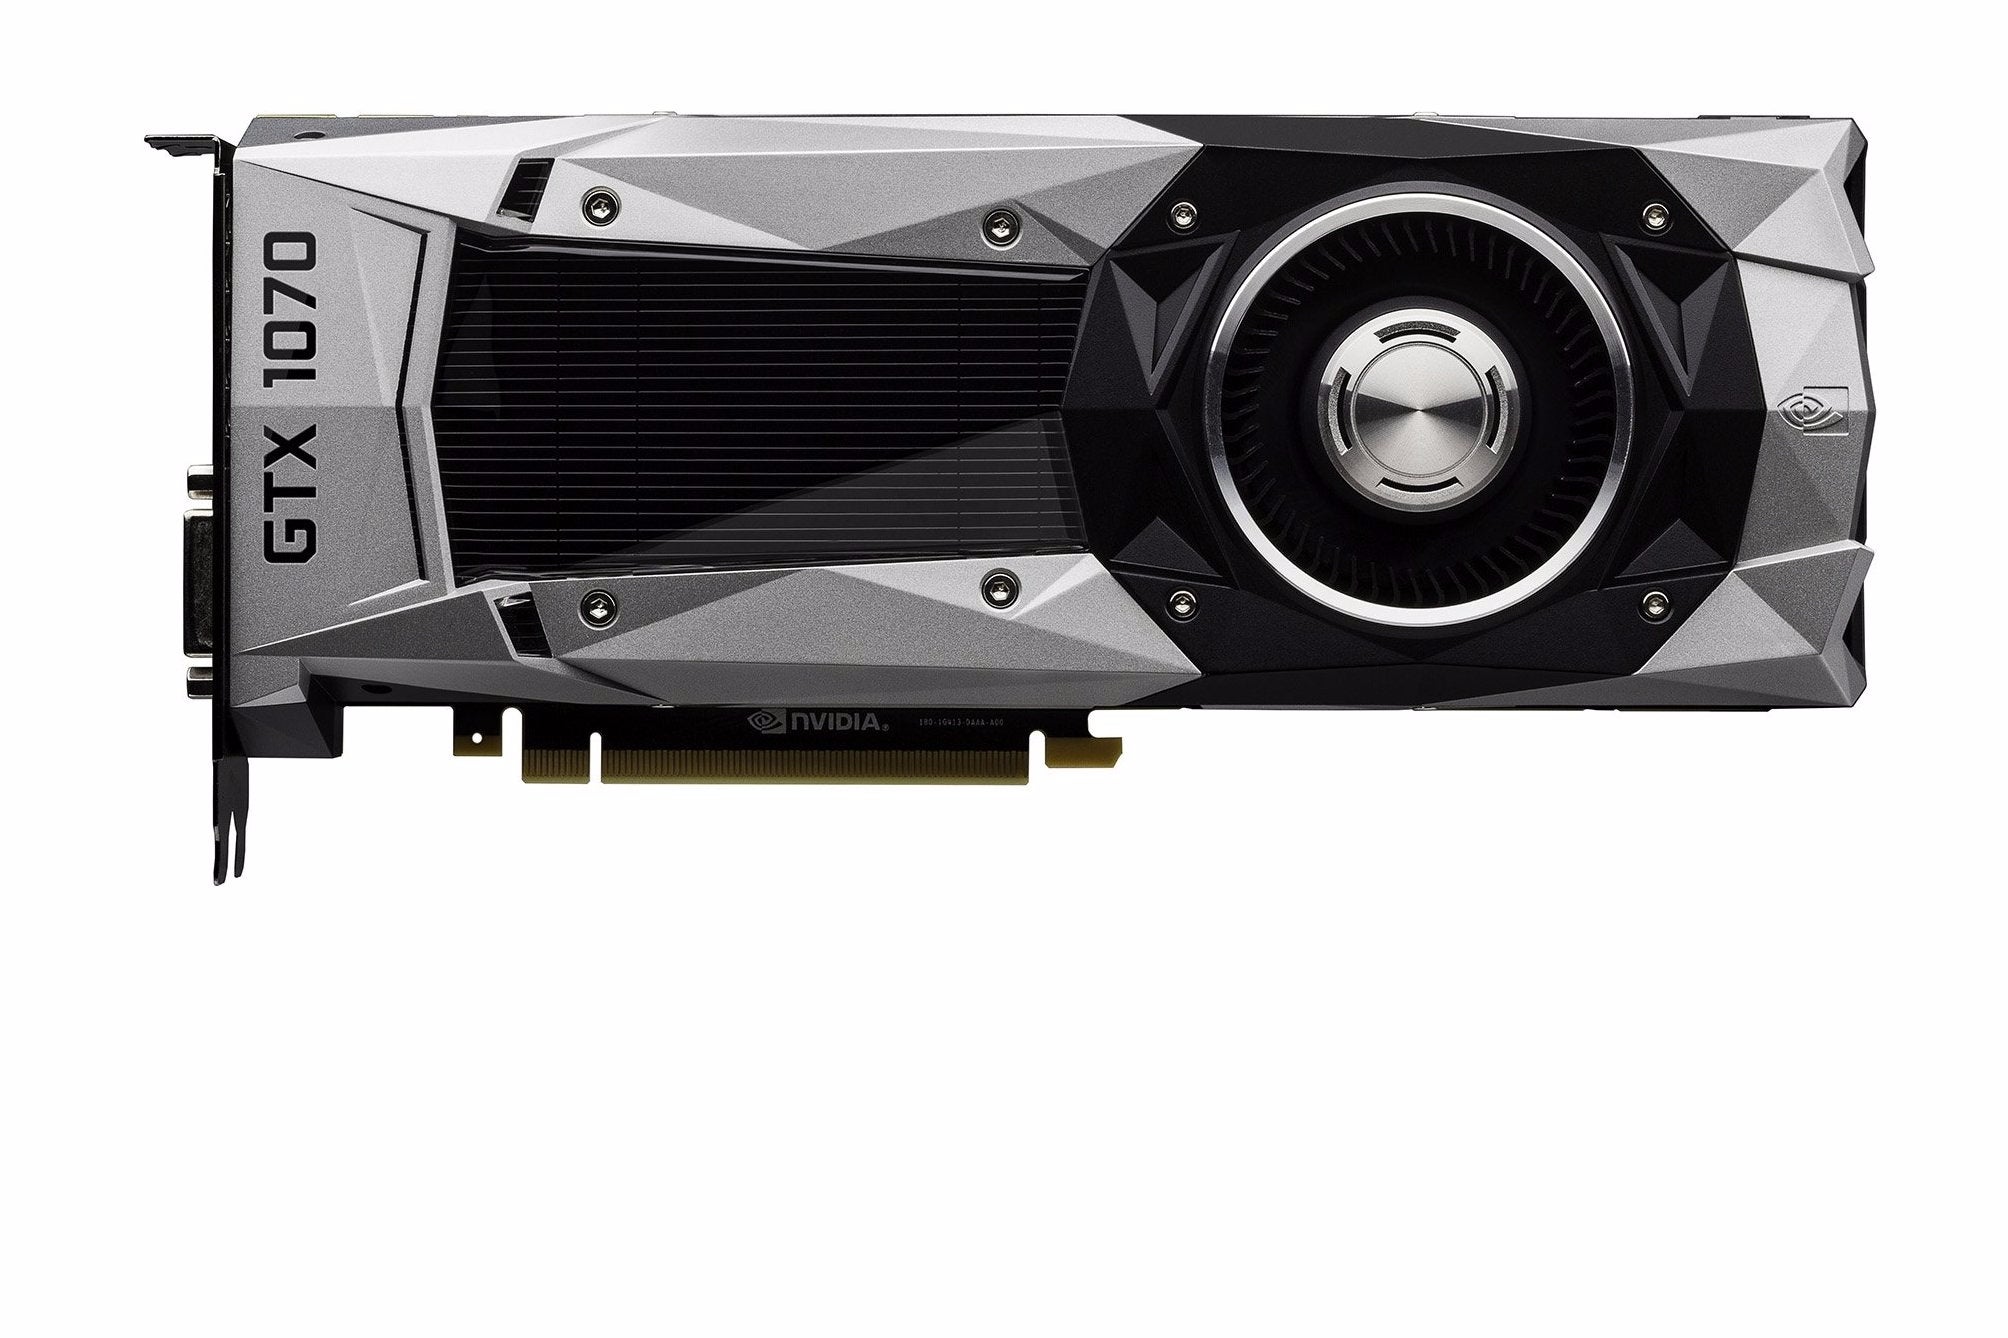 intelligentie Eik Beperking Nvidia GeForce GTX 1070 review - Titan X prestaties aan een lagere prijs |  Eurogamer.nl